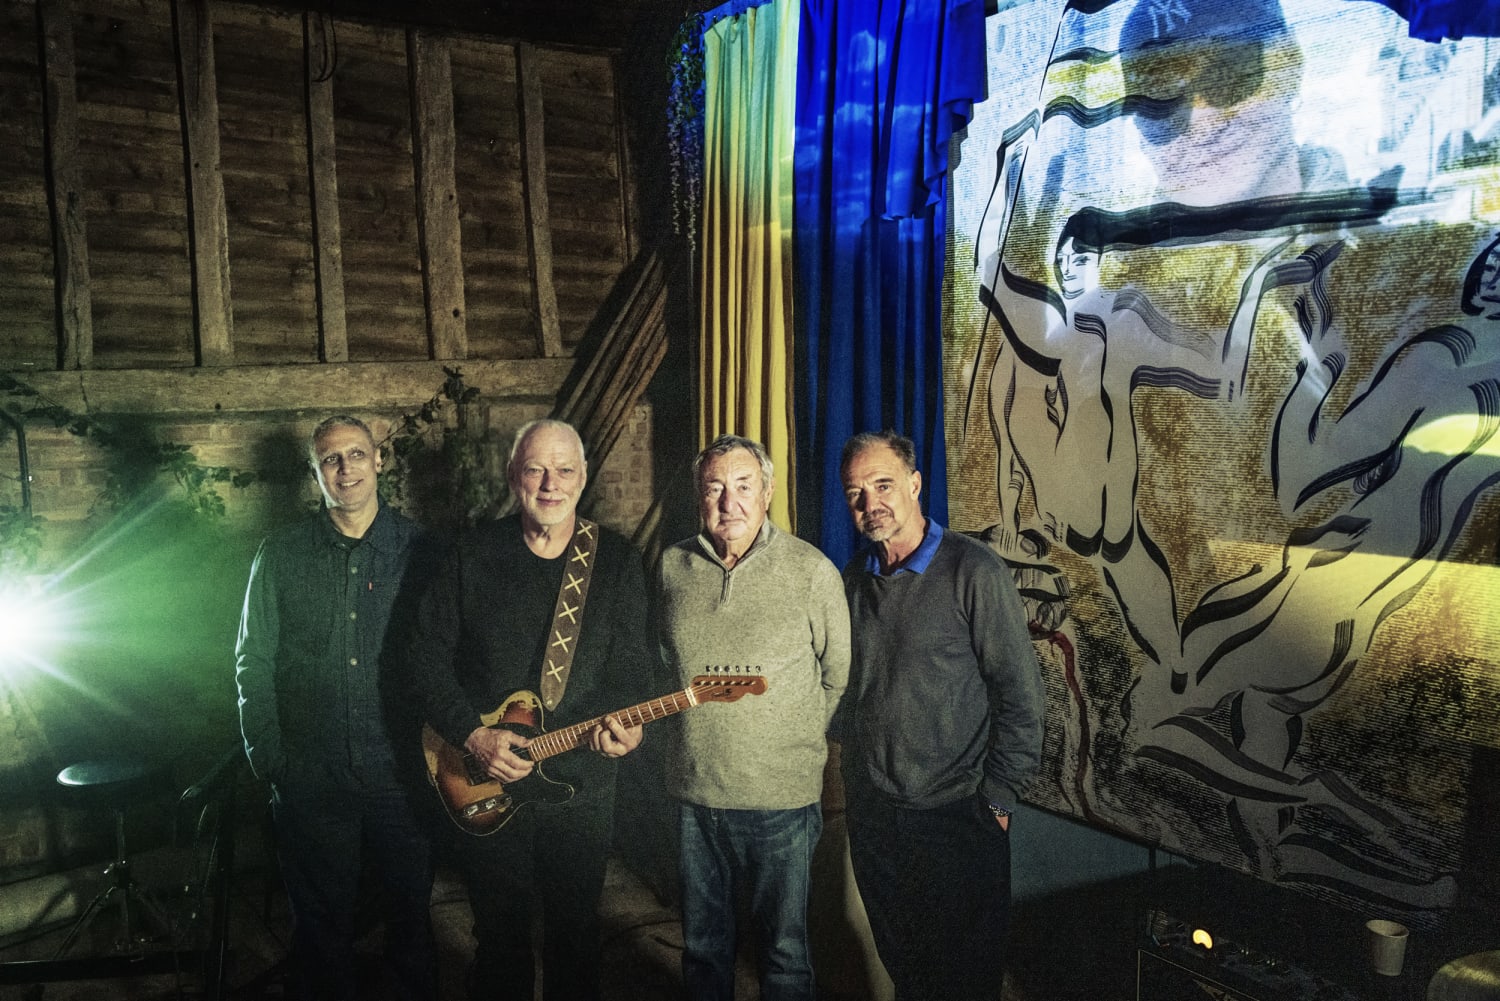 Pink Floyd reunites to support Ukraine